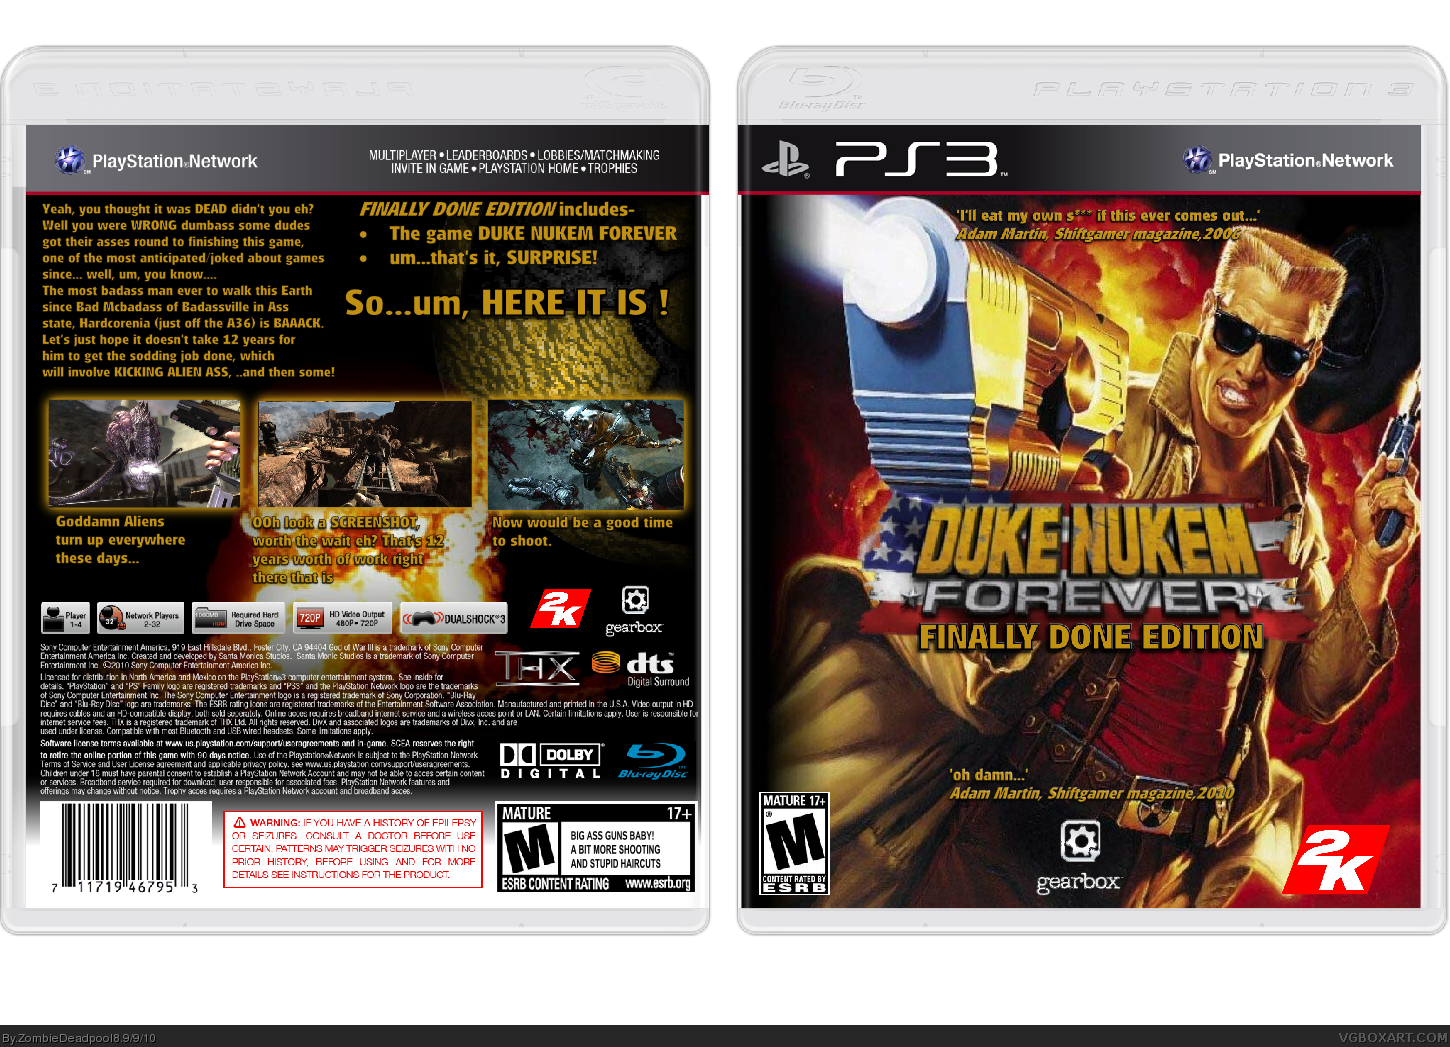 Duke Nukem Forever-Finally Done Edition box cover